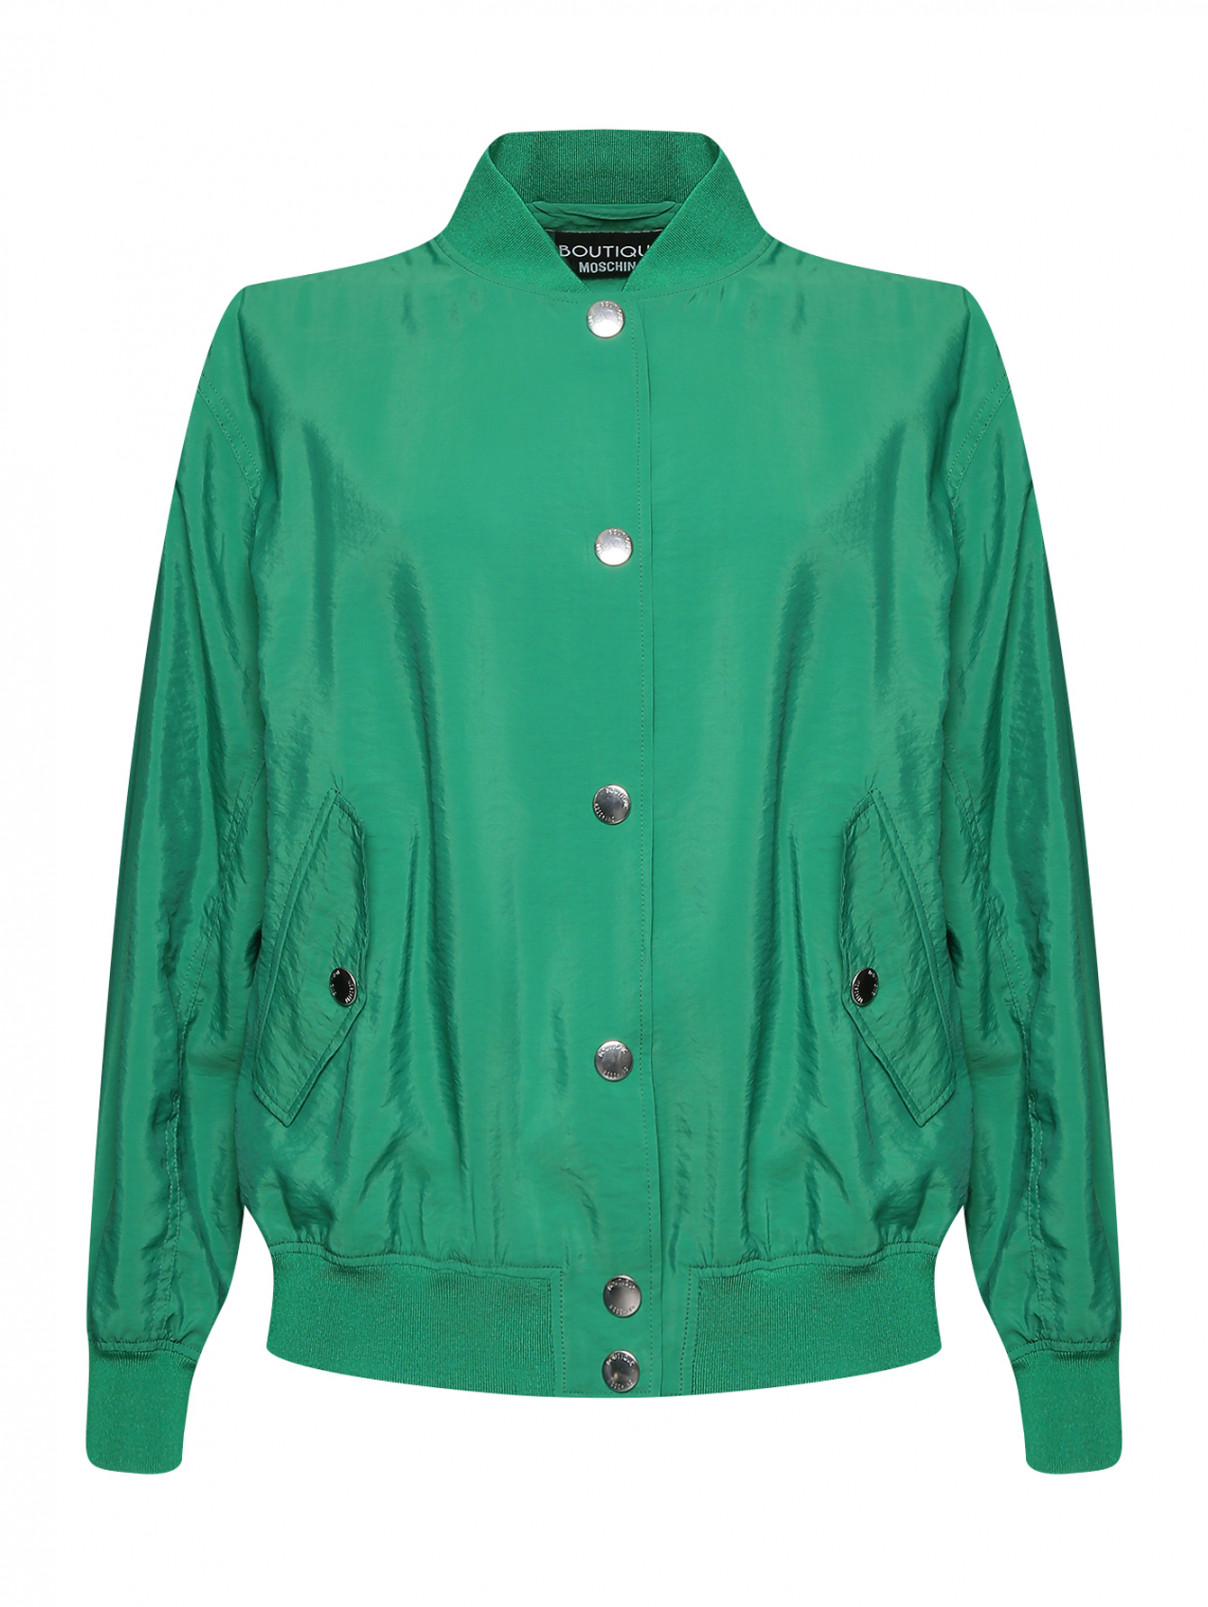 Бомбер на кнопках с карманами Moschino Boutique  –  Общий вид  – Цвет:  Зеленый